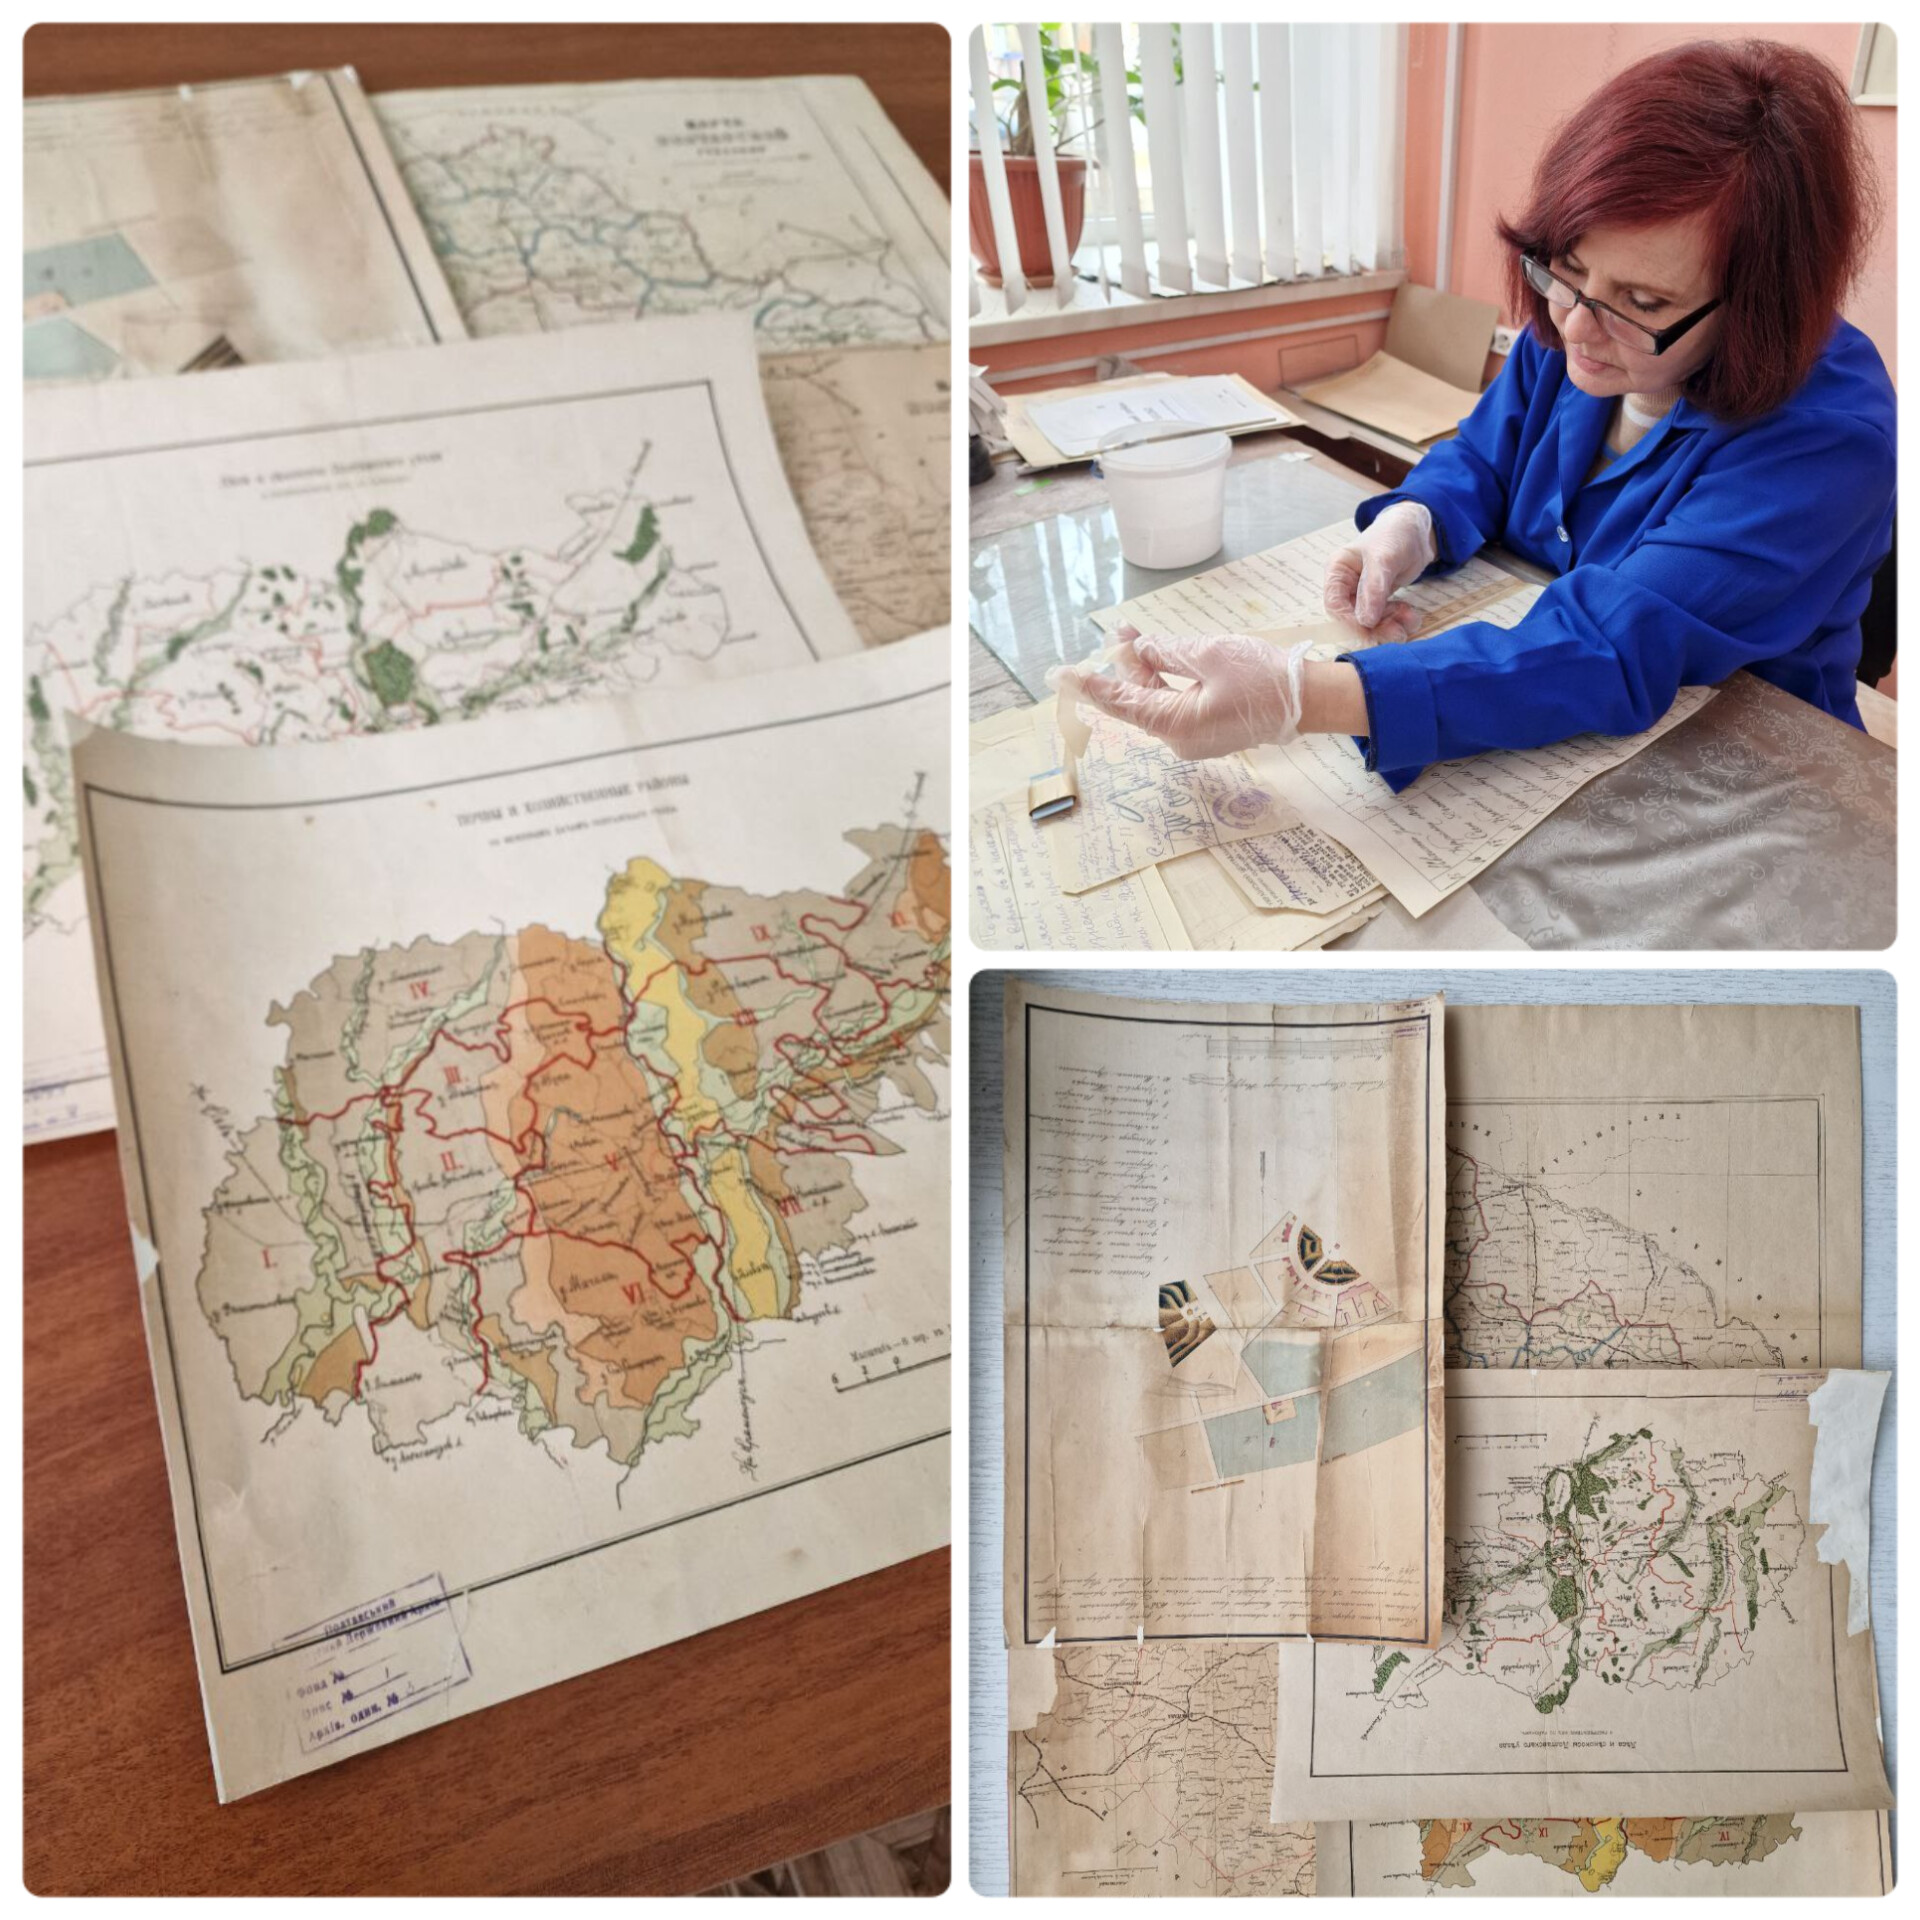 Державний архів Полтавської області проводить реставрацію та ремонт картографічних документів